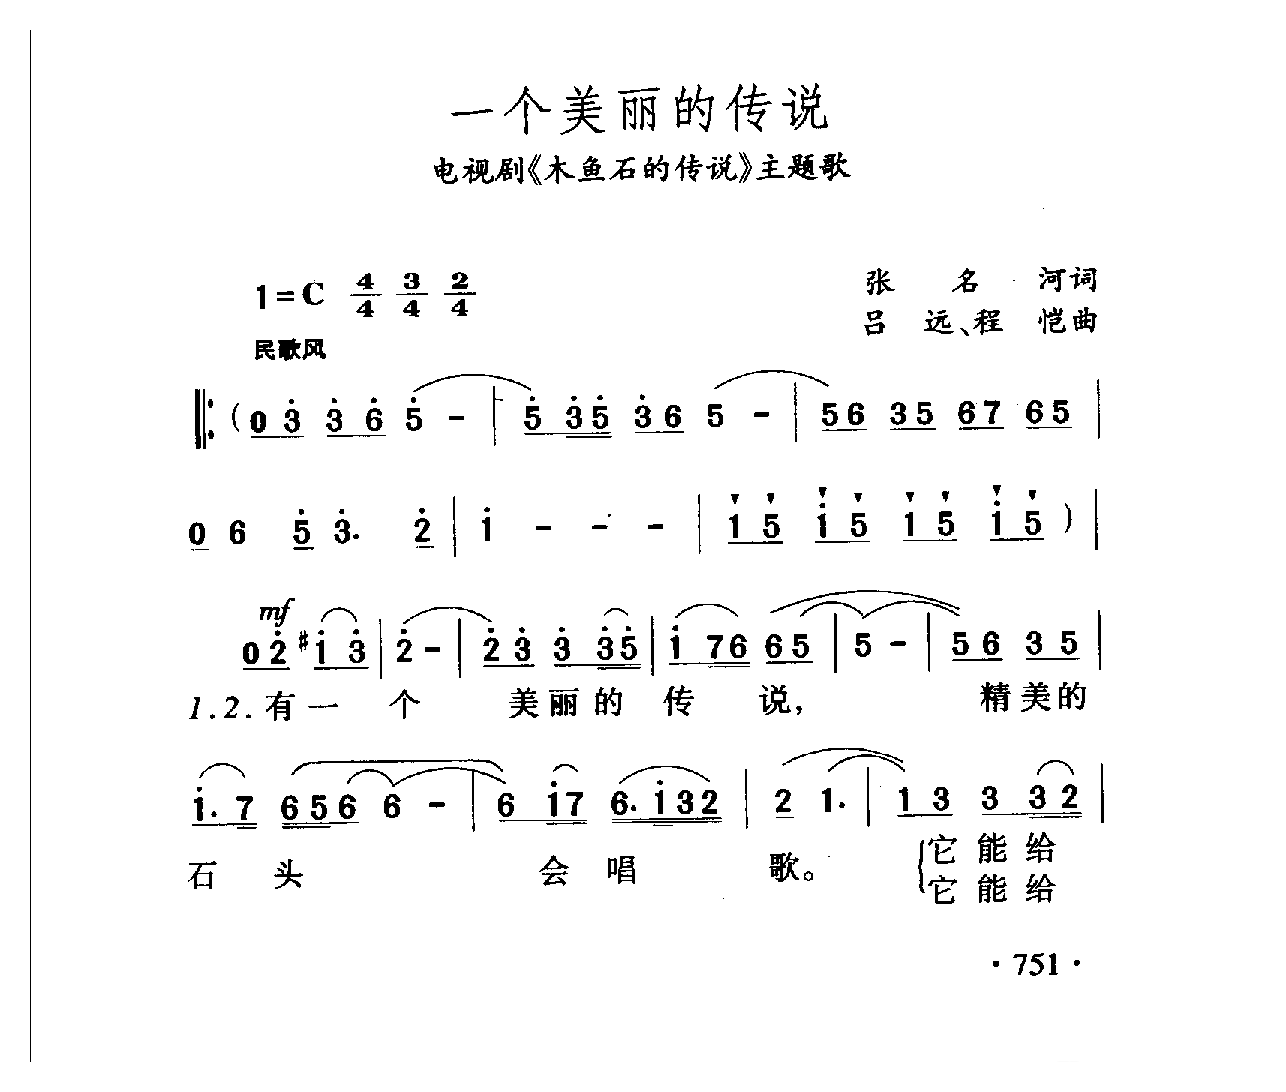 中国名歌[一个美丽的传说 电视剧（木鱼石的传说）主题歌]乐谱